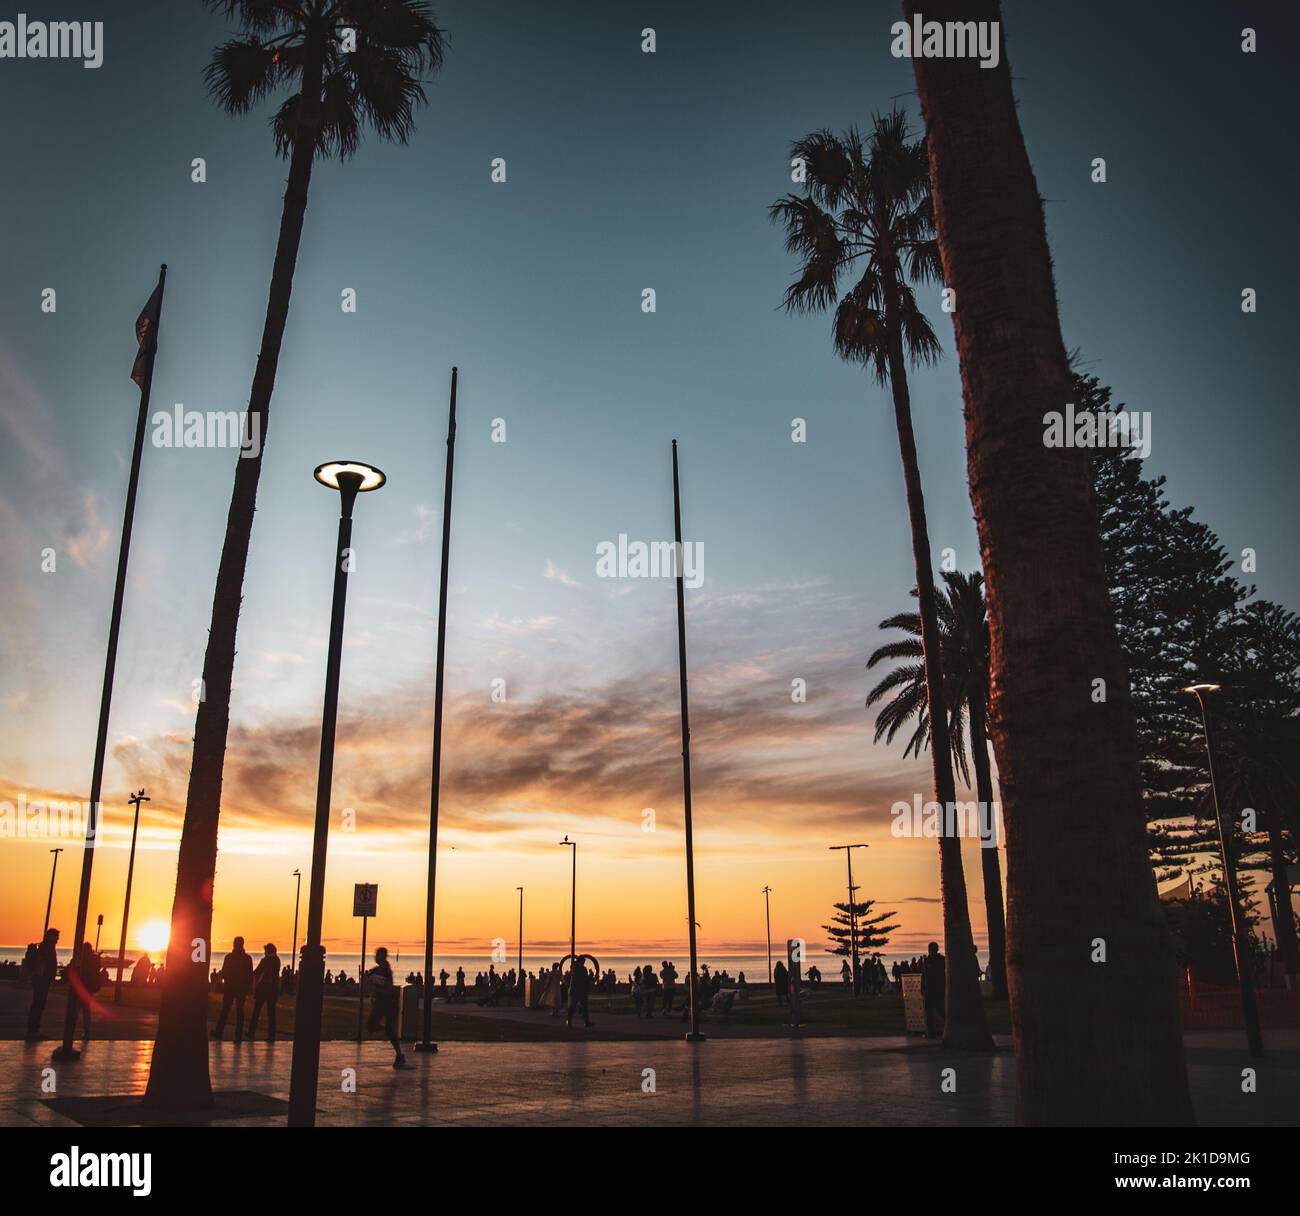 La place Moseley avec silhouettes de palmiers longs au coucher du soleil, Glenelg, Australie Banque D'Images